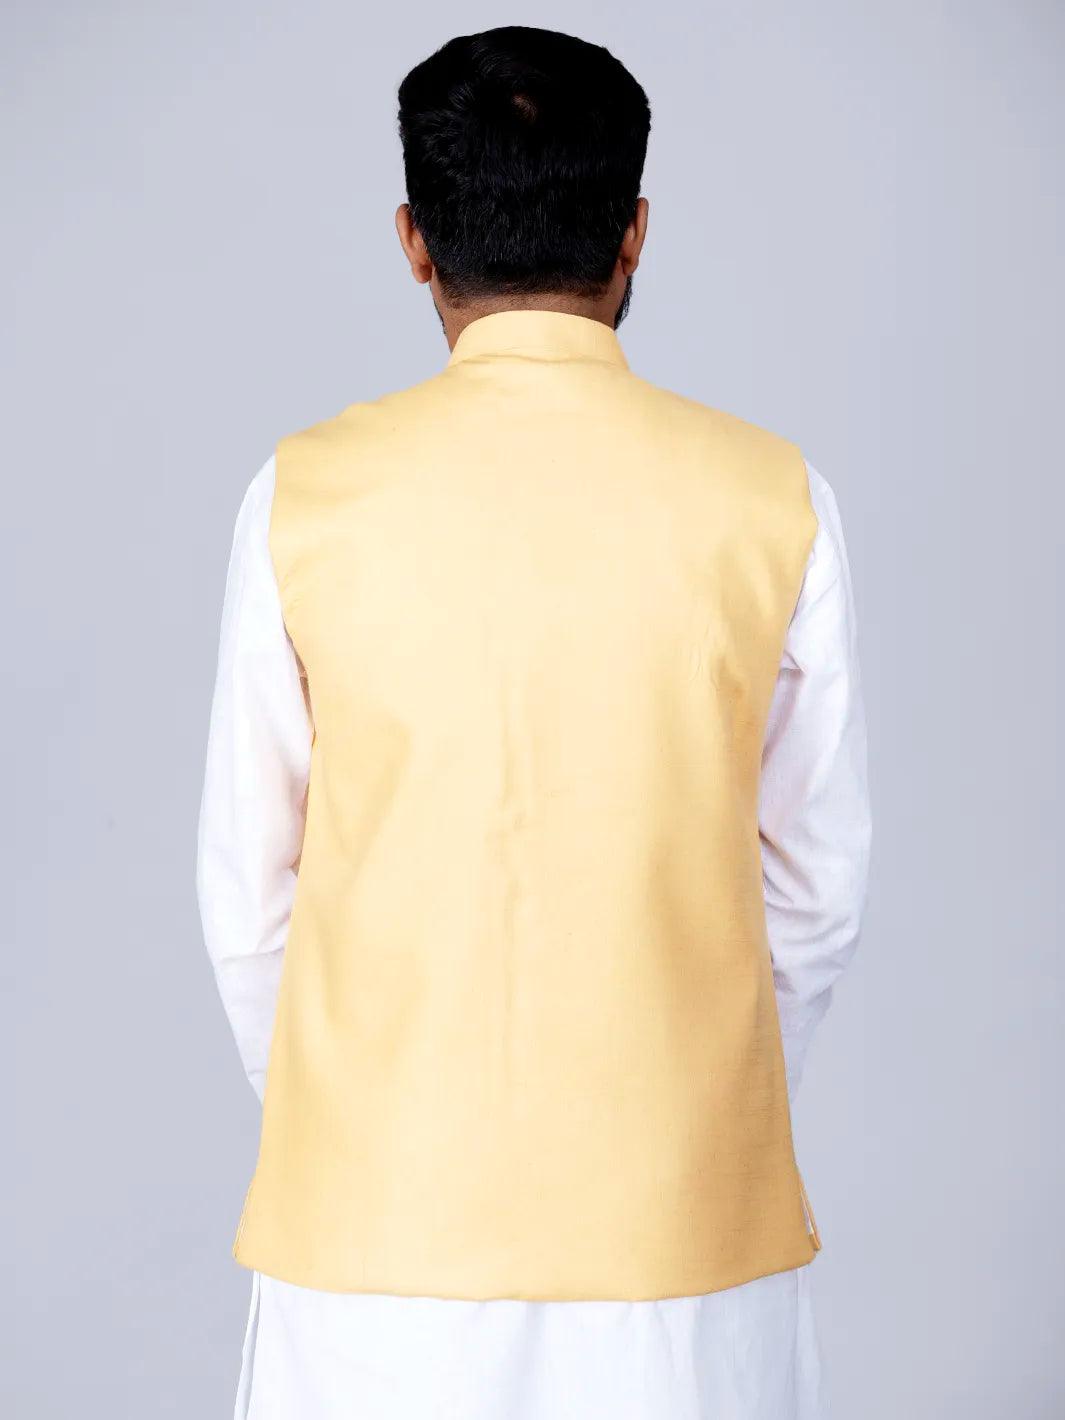 Lemon Chiffon Handwoven Cotton Modi Jacket - WeaversIndia